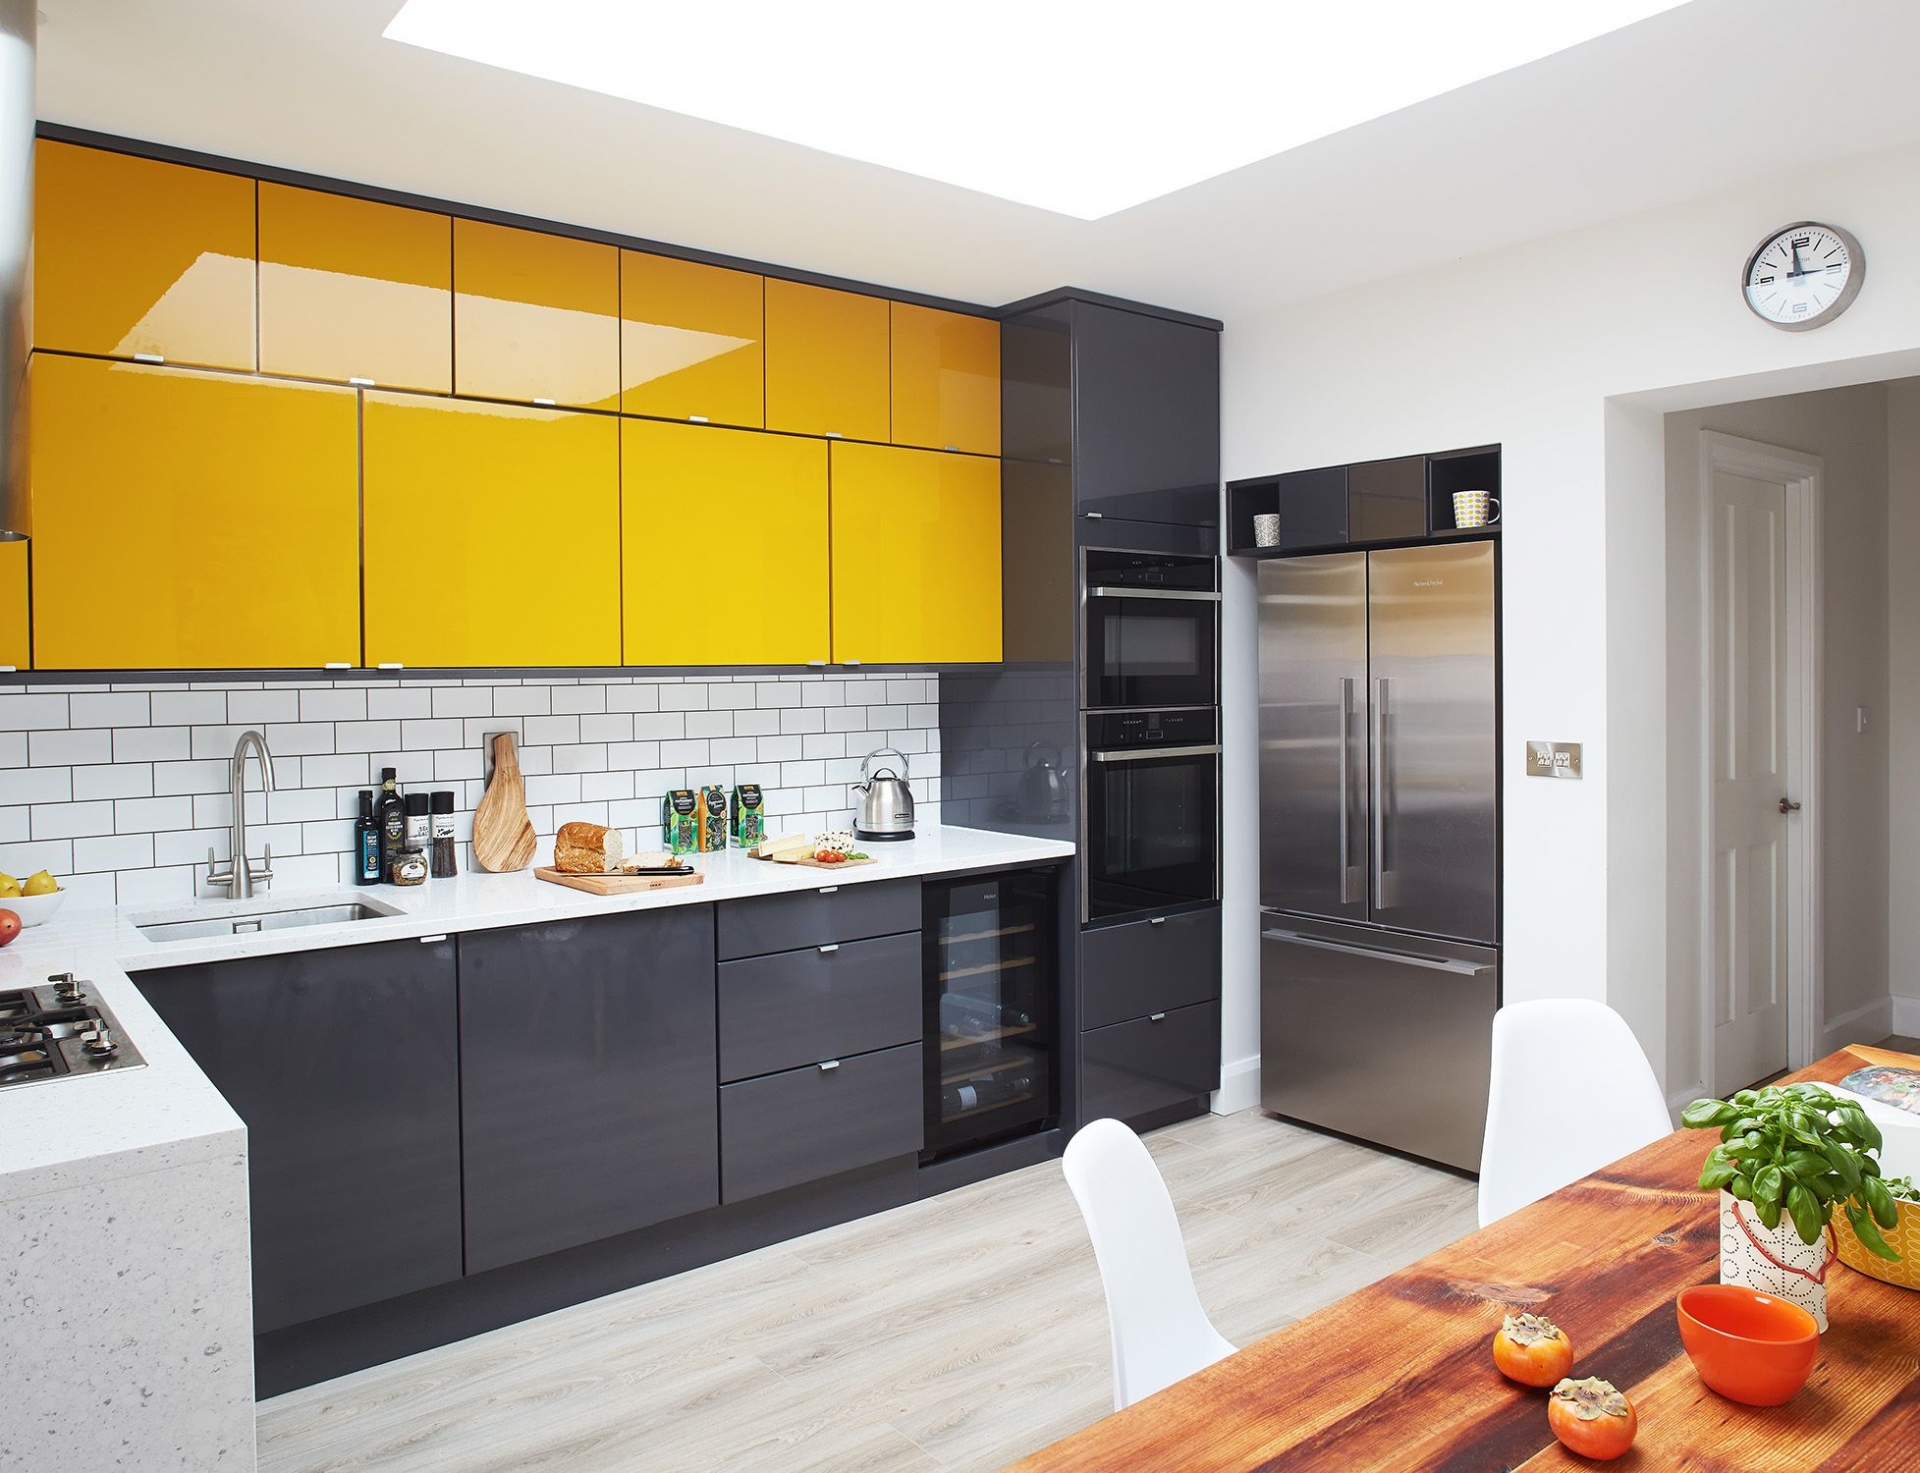 Không gian phòng bếp rộng rãi với giếng trời thoáng sáng, phản chiếu ánh sáng lên bề mặt hệ thống tủ lưu trữ trên và dưới với tone màu vàng mù tạt - đen xám bóng bẩy. 